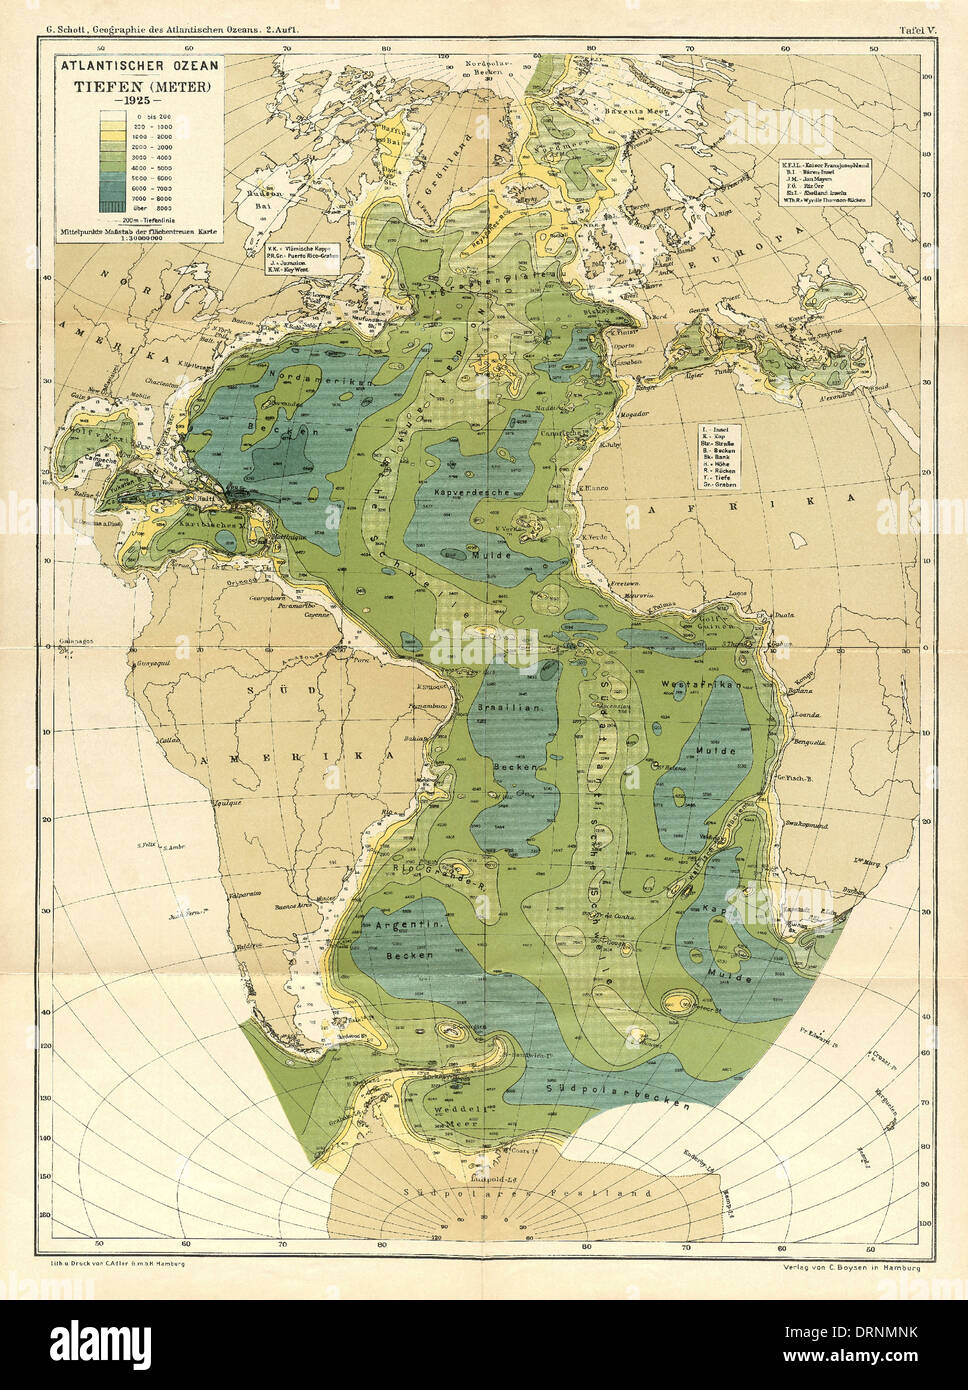 Karte des Atlantischen Ozean Fußboden aus geographischen Das Atlantischen Ozeans veröffentlicht im Jahr 1925 von deutscher Ozeanograph Gerhard Schott. Die Karte zeigt alle wichtigen Features und Topographie. Stockfoto